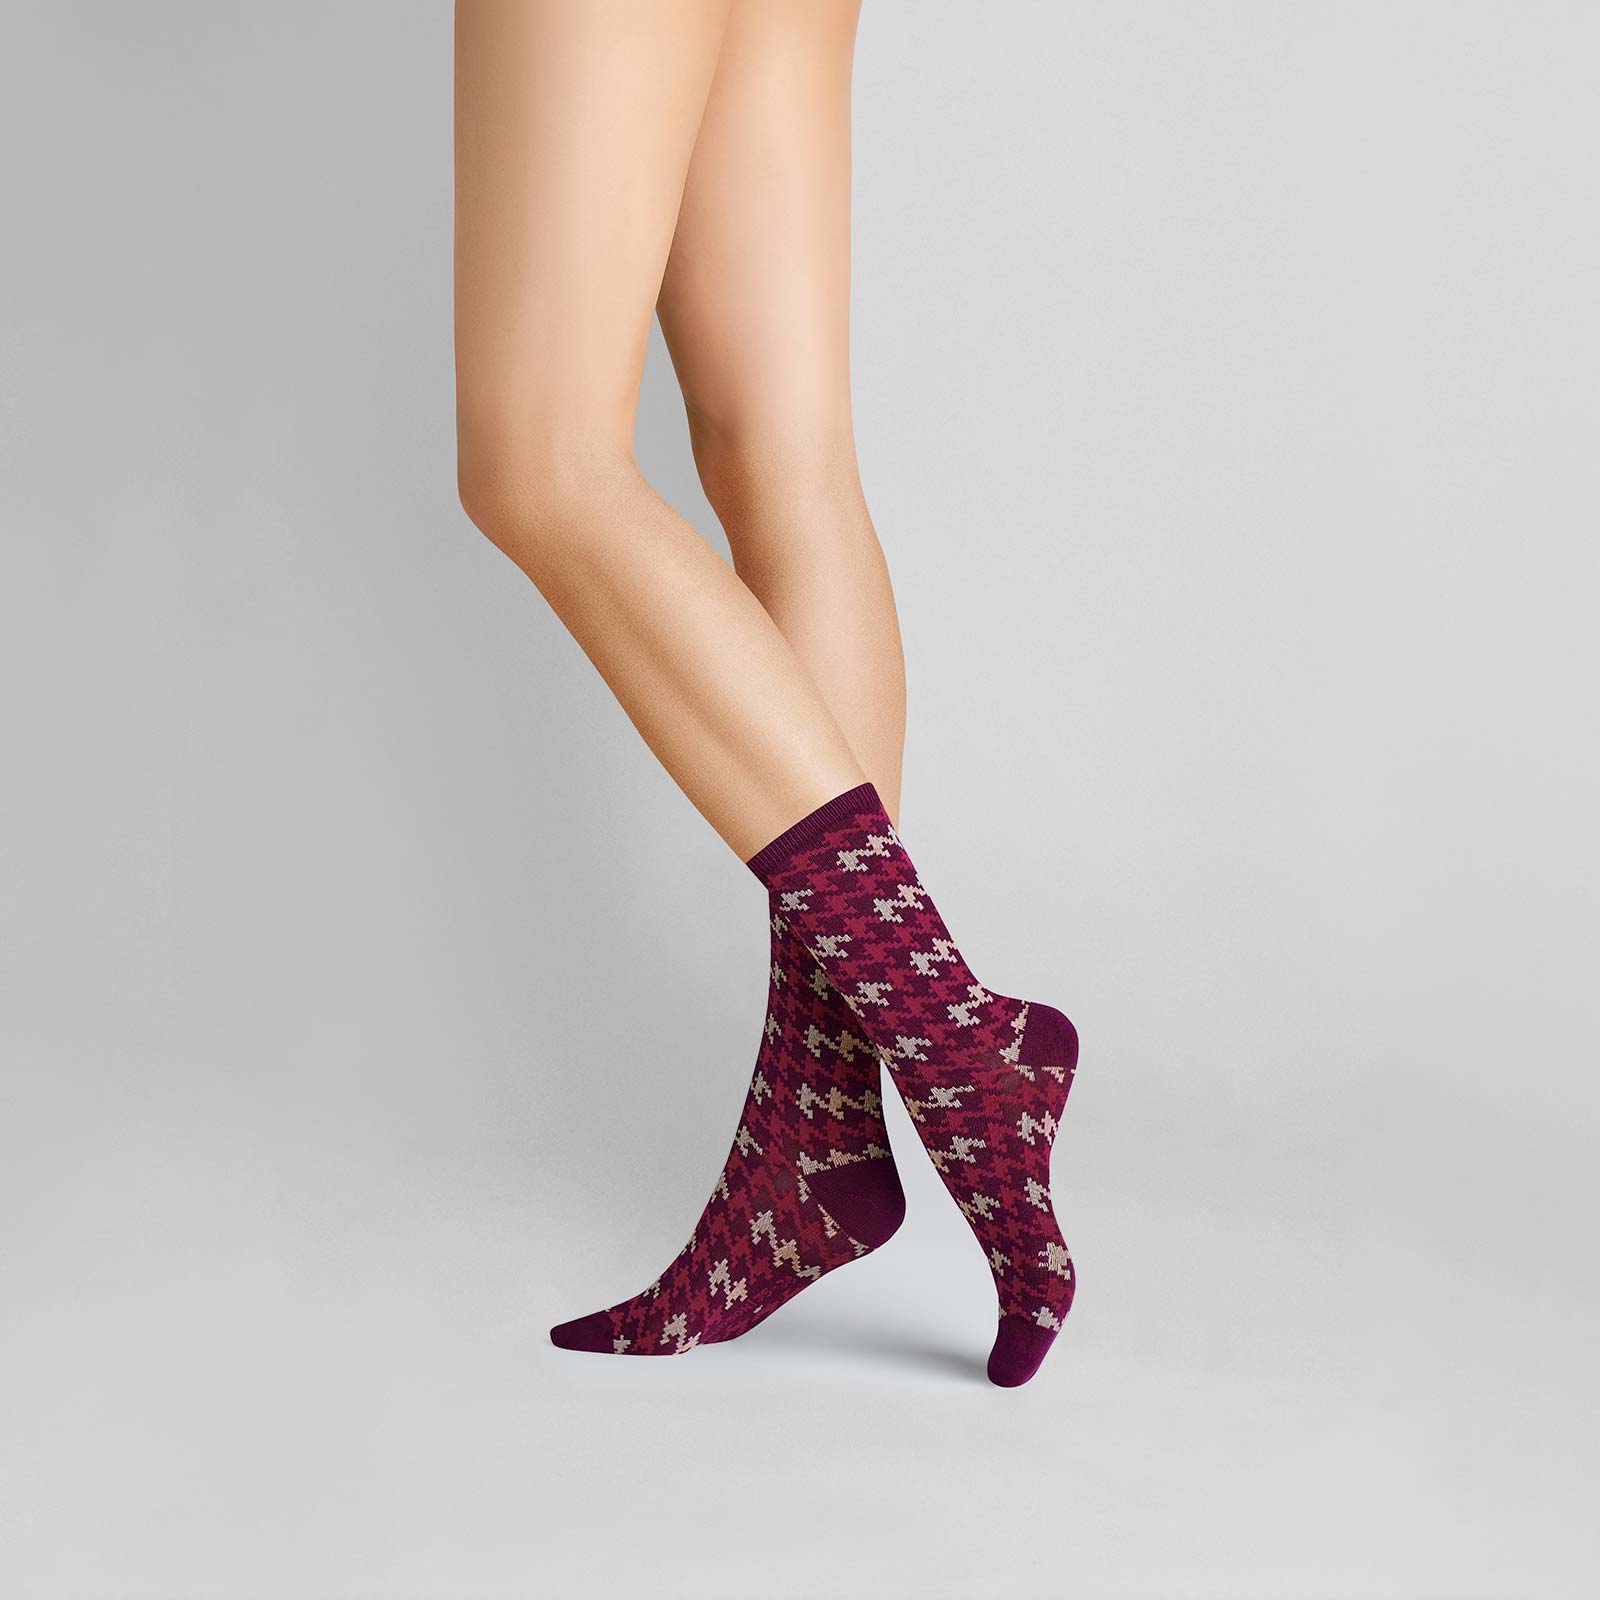 HUDSON Damen HOUNDSTOOTH -  39/42 - Damen Socken mit angesagtem Hahnentritt-Muster - Sweet lilac (Pink/Violett)